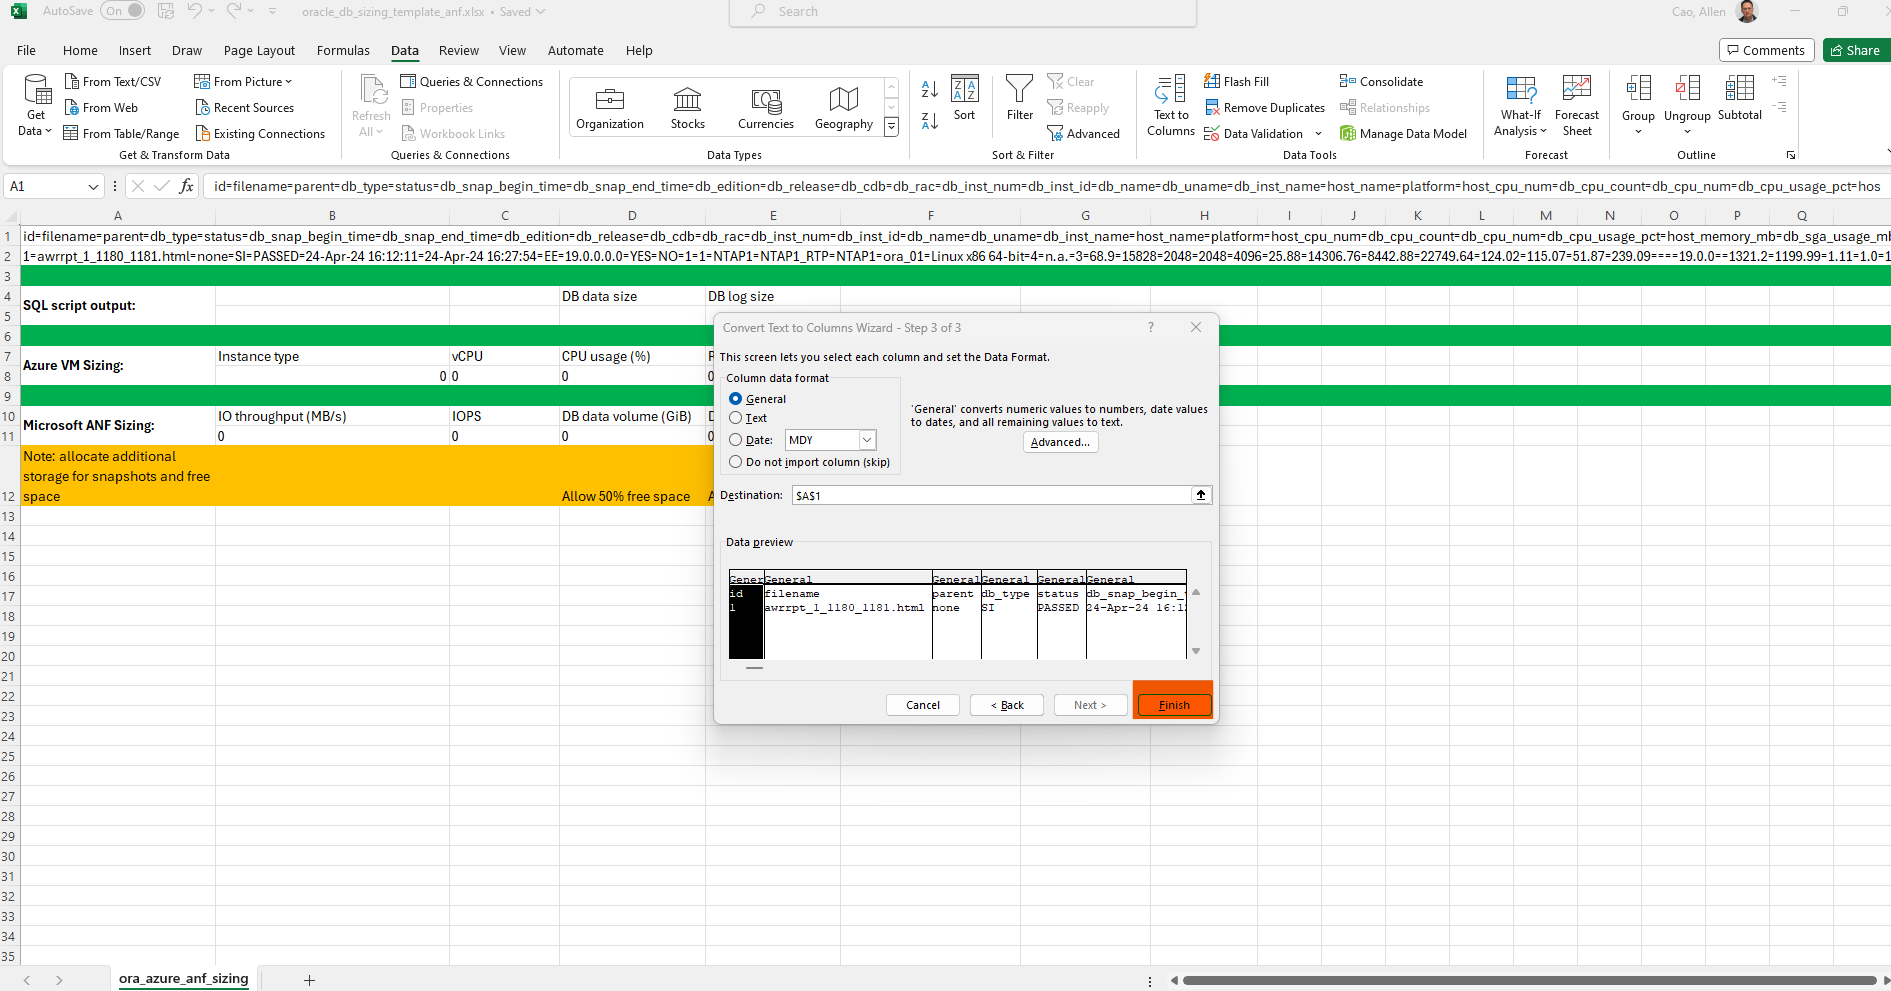 此影像提供 Excel 範本的螢幕擷取畫面、以供 Oracle 調整規模